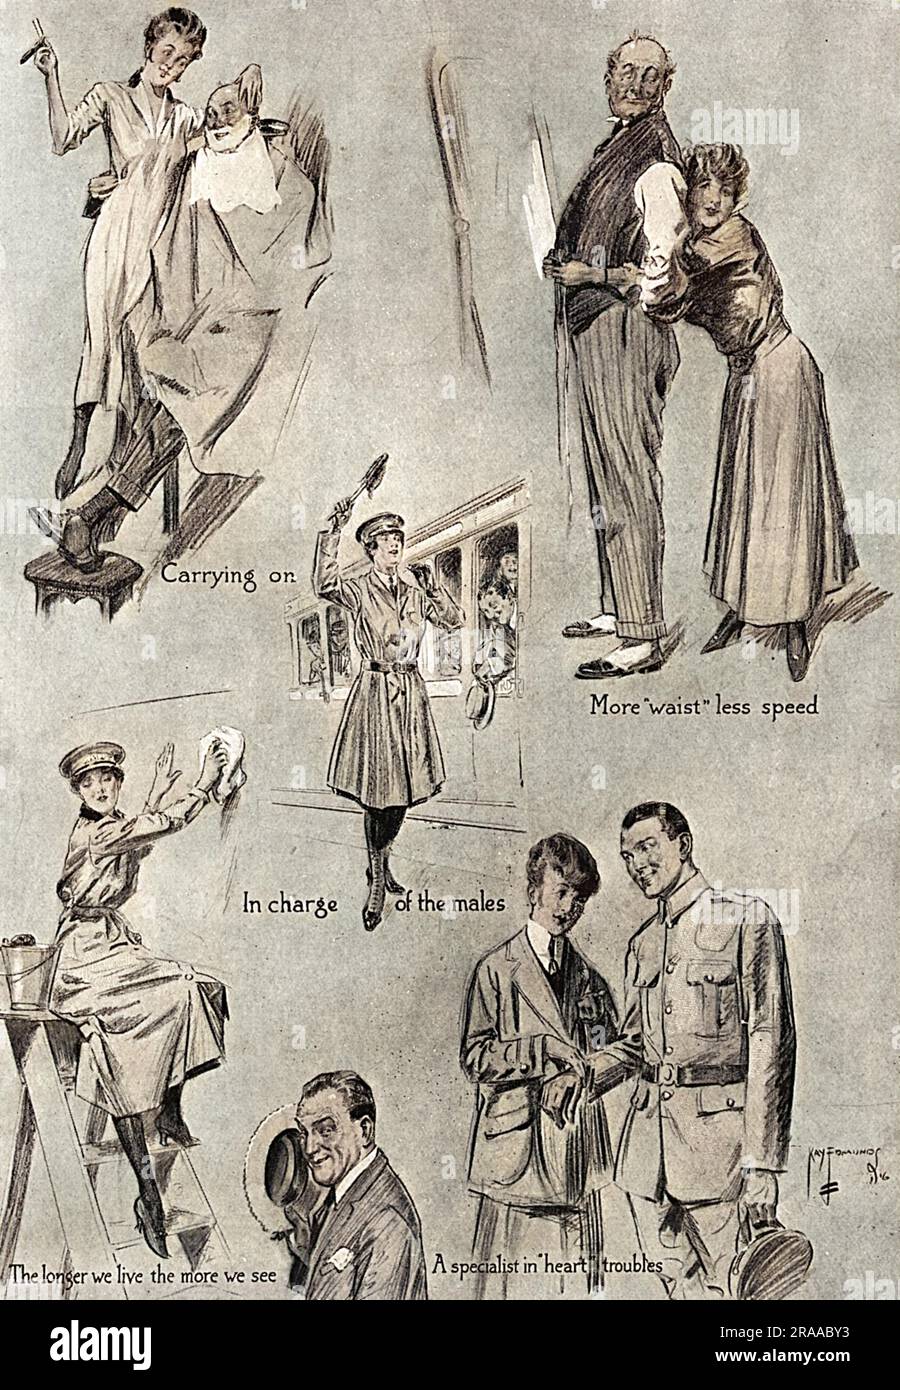 Eine Seite mit Skizzen von "Männerarbeit, die die Männer den Frauen wünschen", eine humorvolle (und leicht chauvinistische) Bemerkung zu den traditionell männlichen Jobs, die Frauen während des Ersten Weltkriegs angenommen haben. Datum: 1916 Stockfoto